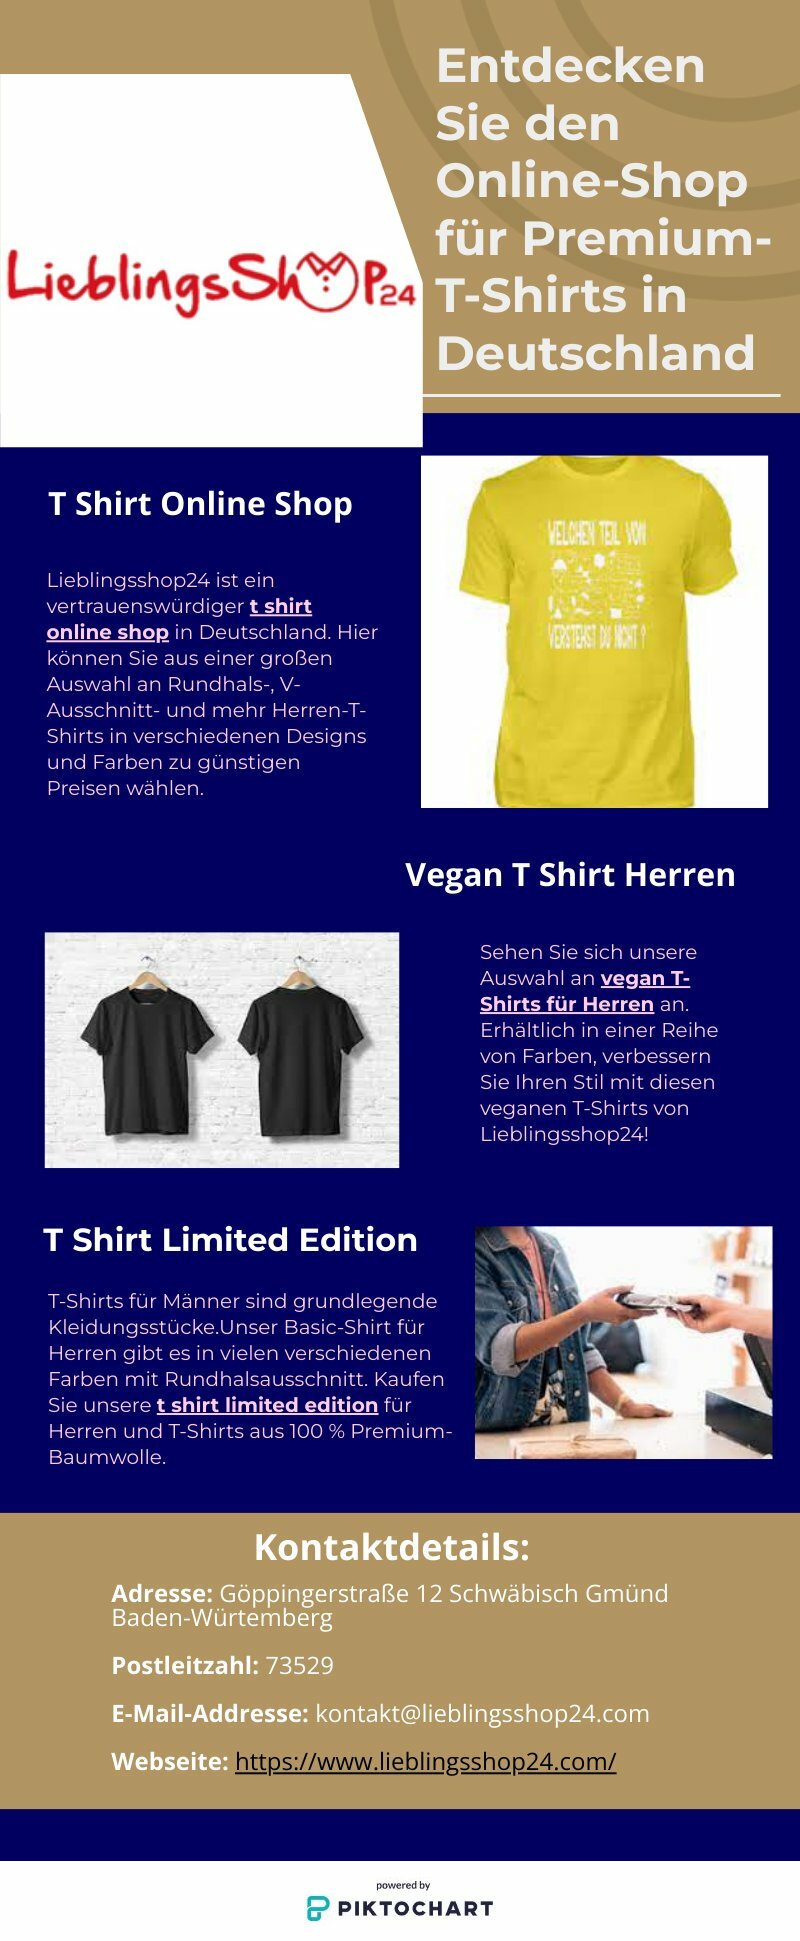 Entdecken Sie den Online-Shop für Premium-T-Shirts | Piktochart Visual Editor